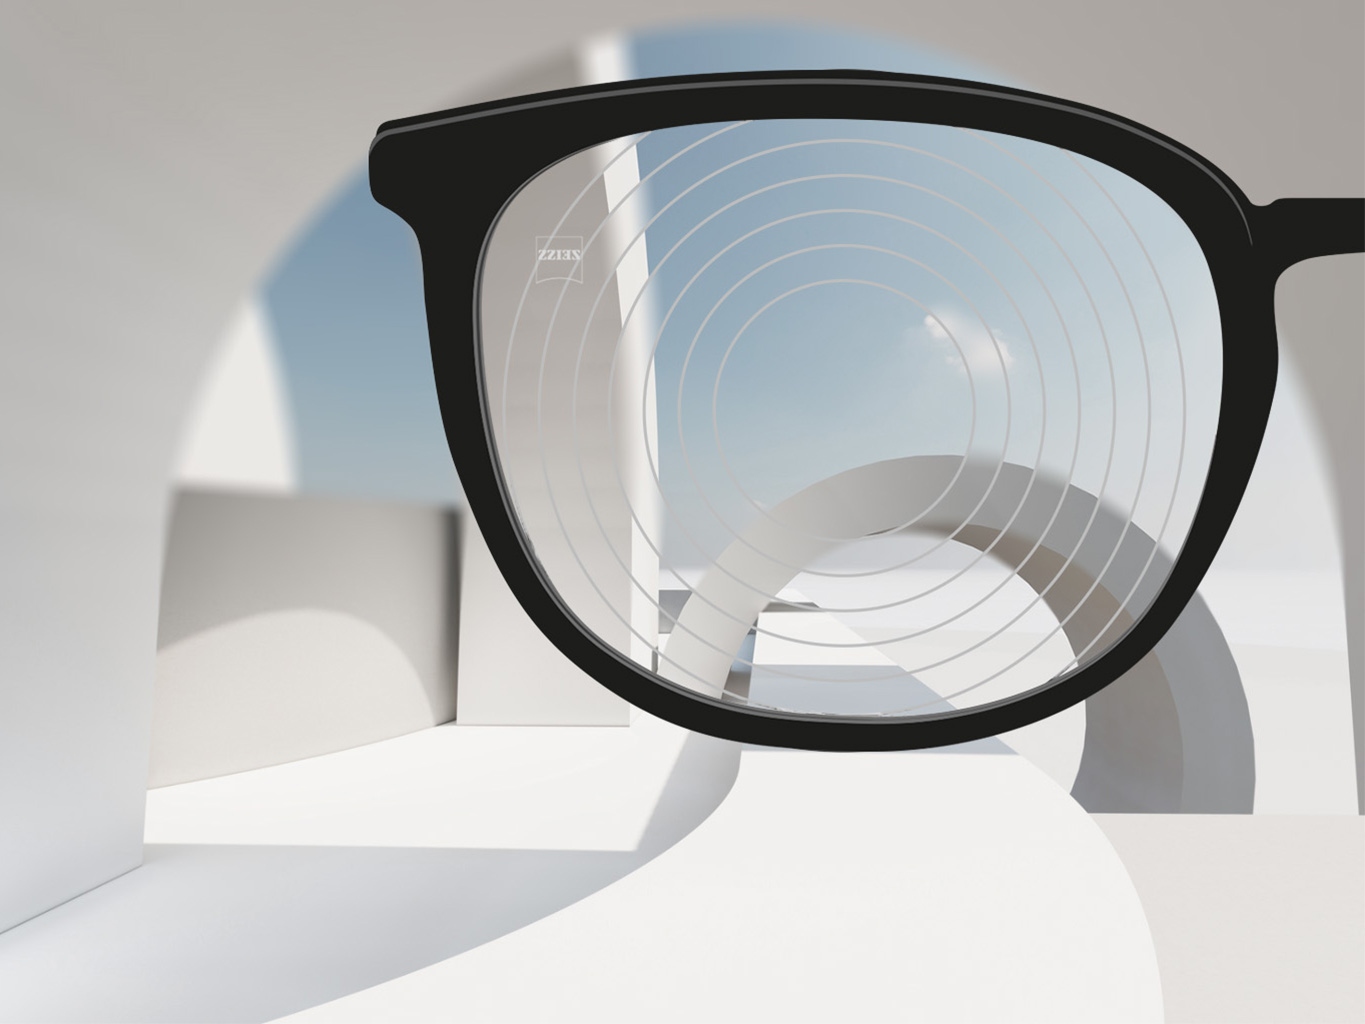 Et nærbillede af brilleglas til myopibehandling fra ZEISS, med et sort brillestel og koncentriske ringe på glassets overflade.